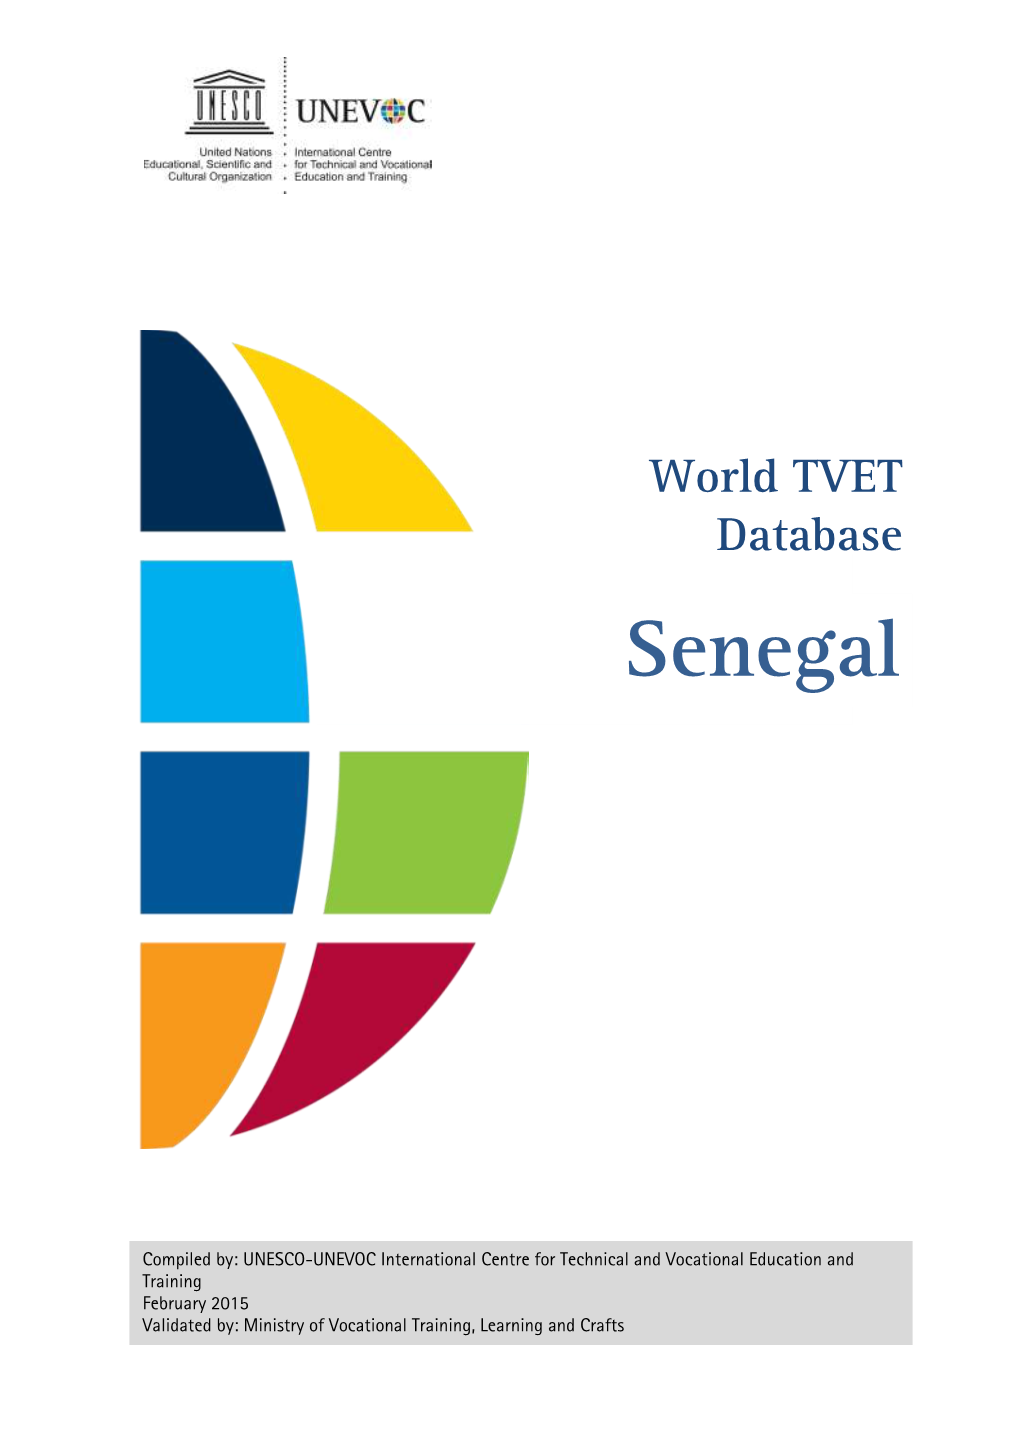 World TVET Database, Senegal